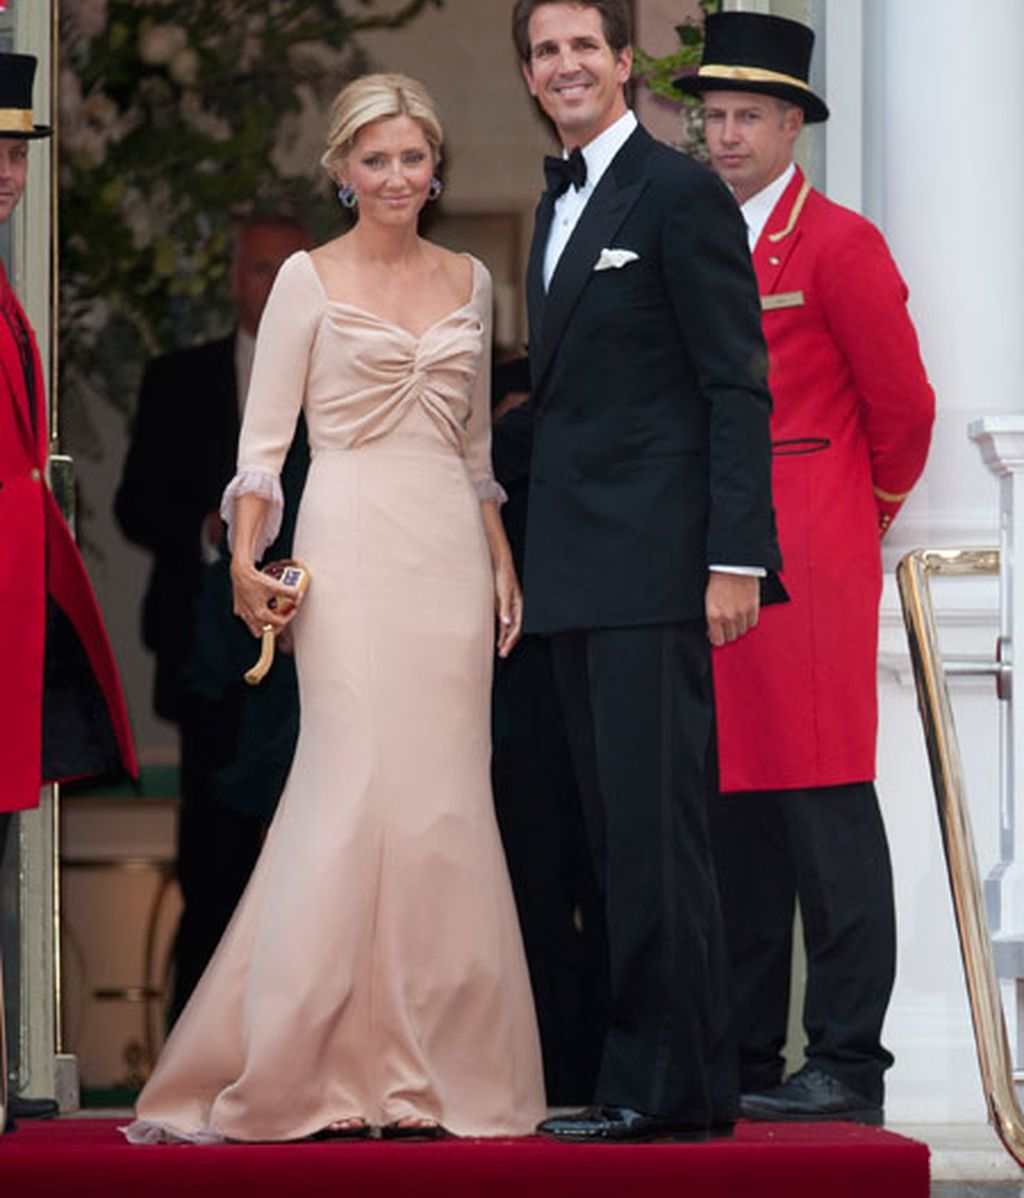 La cena de gala previa al enlace de Kate Middleton y el príncipe Guillermo